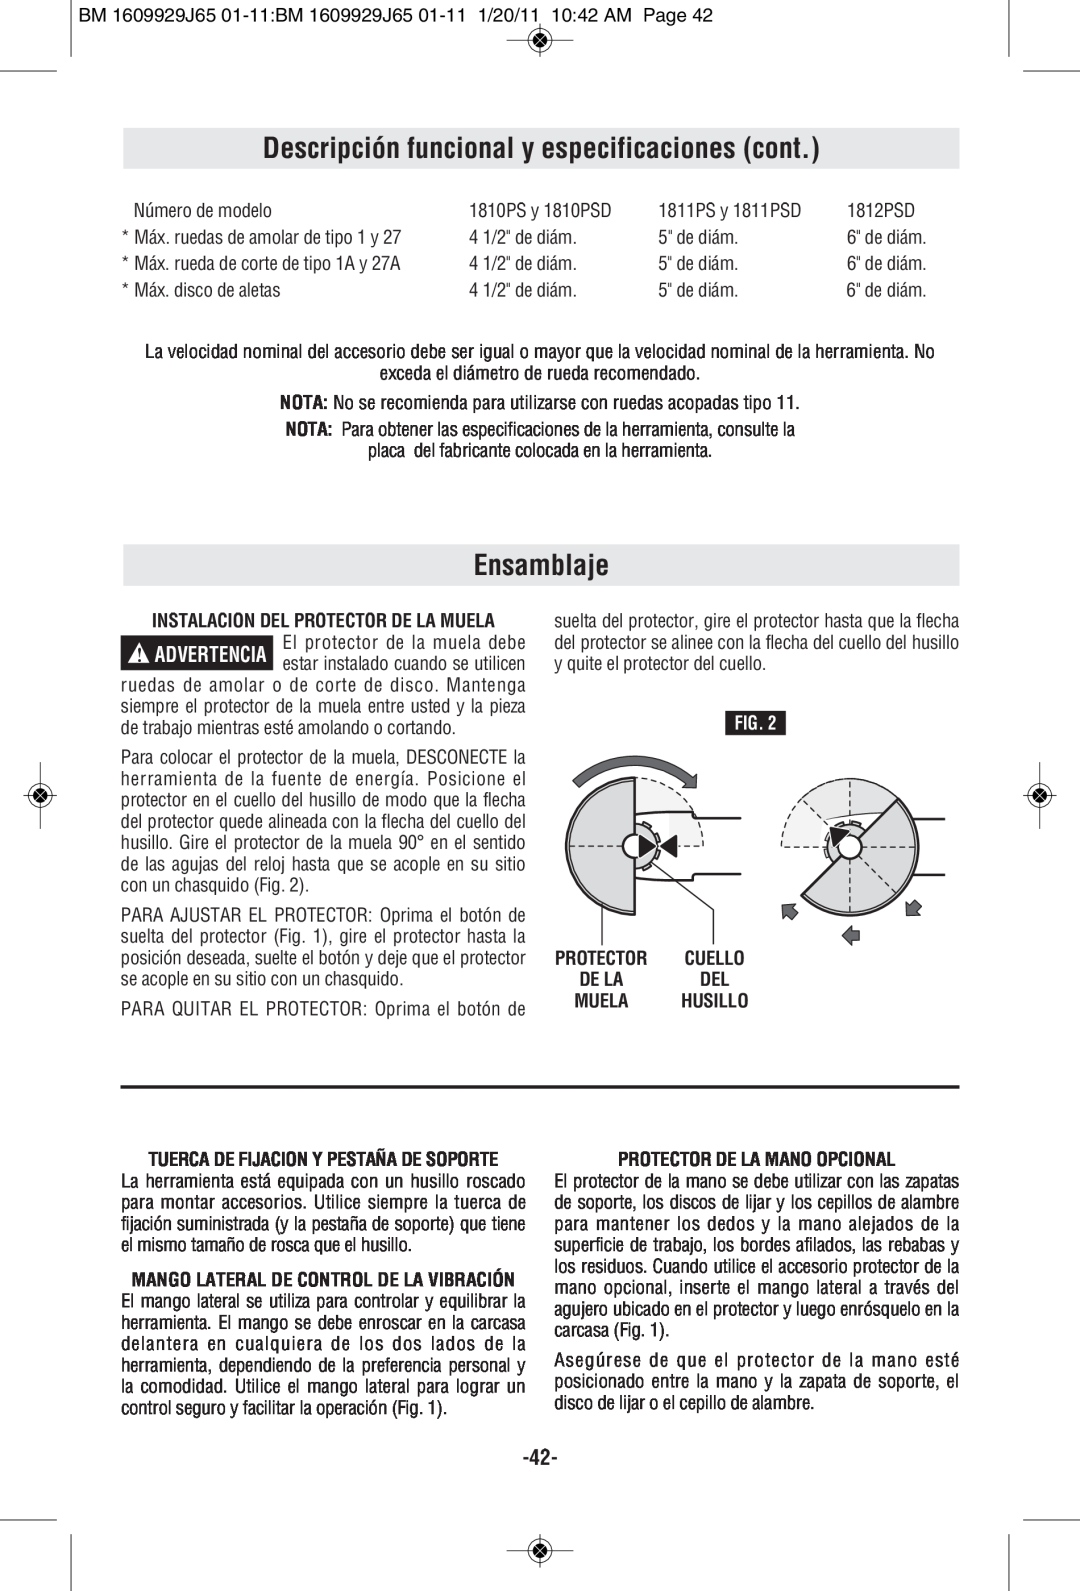 Bosch Power Tools 1811PSD manual Descripción funcional y especificaciones cont, Ensamblaje, Protector De La Mano Opcional 